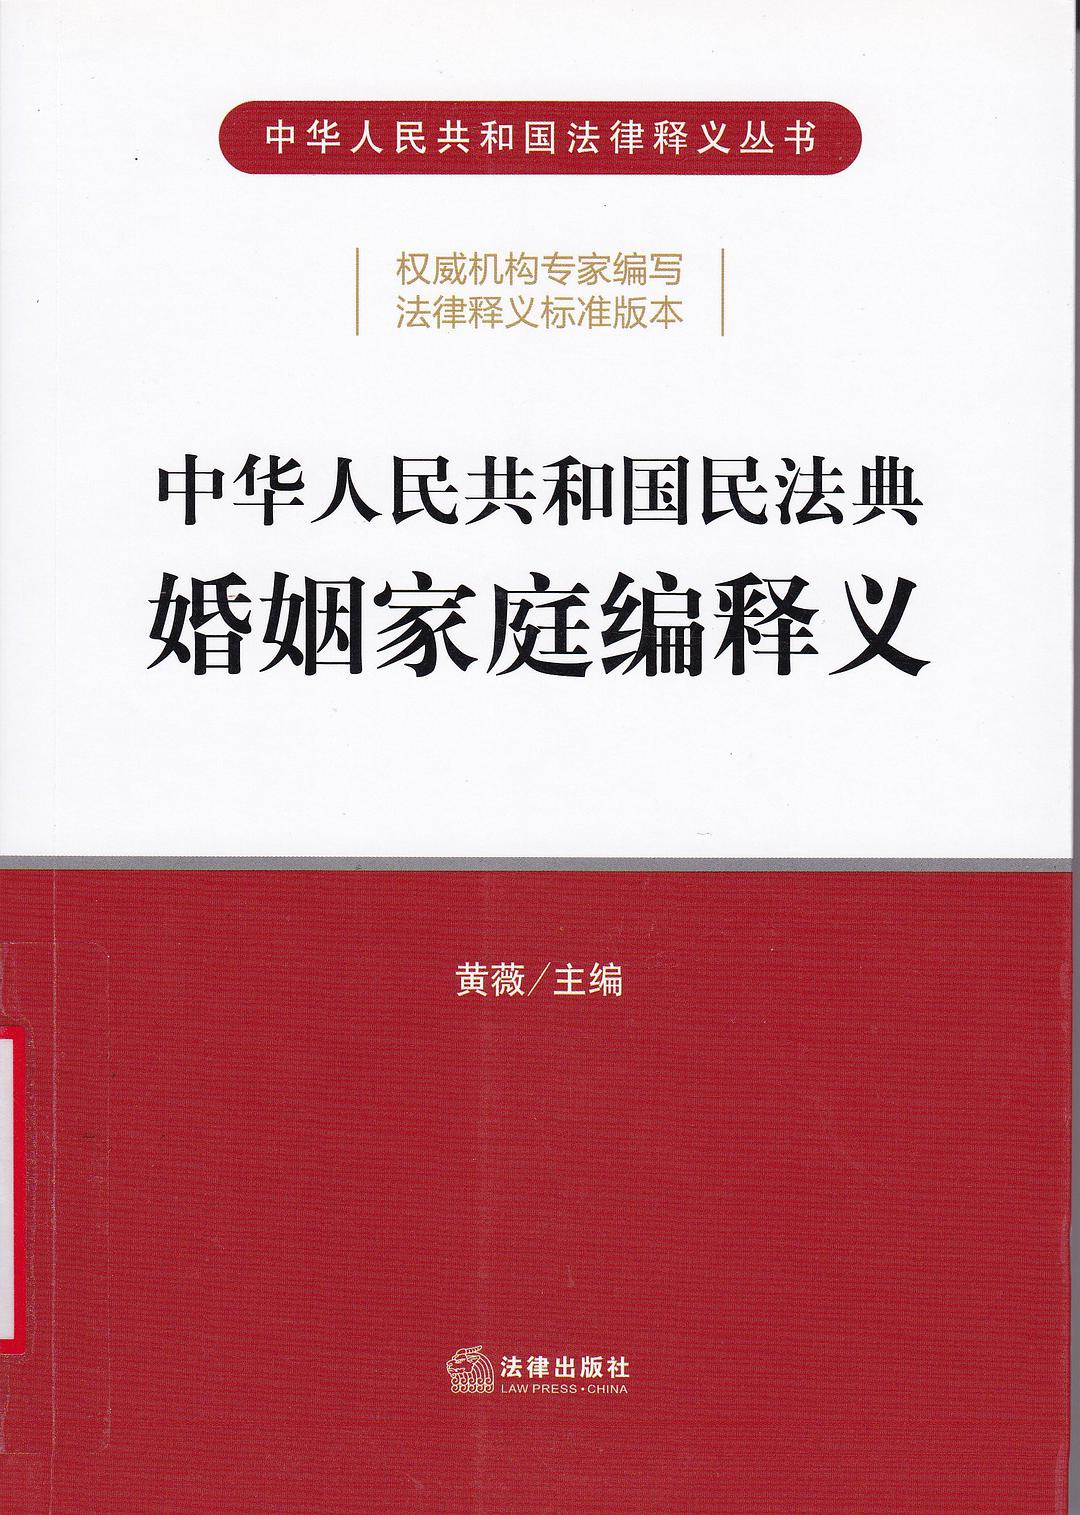 中华人民共和国民法典婚姻家庭编释义